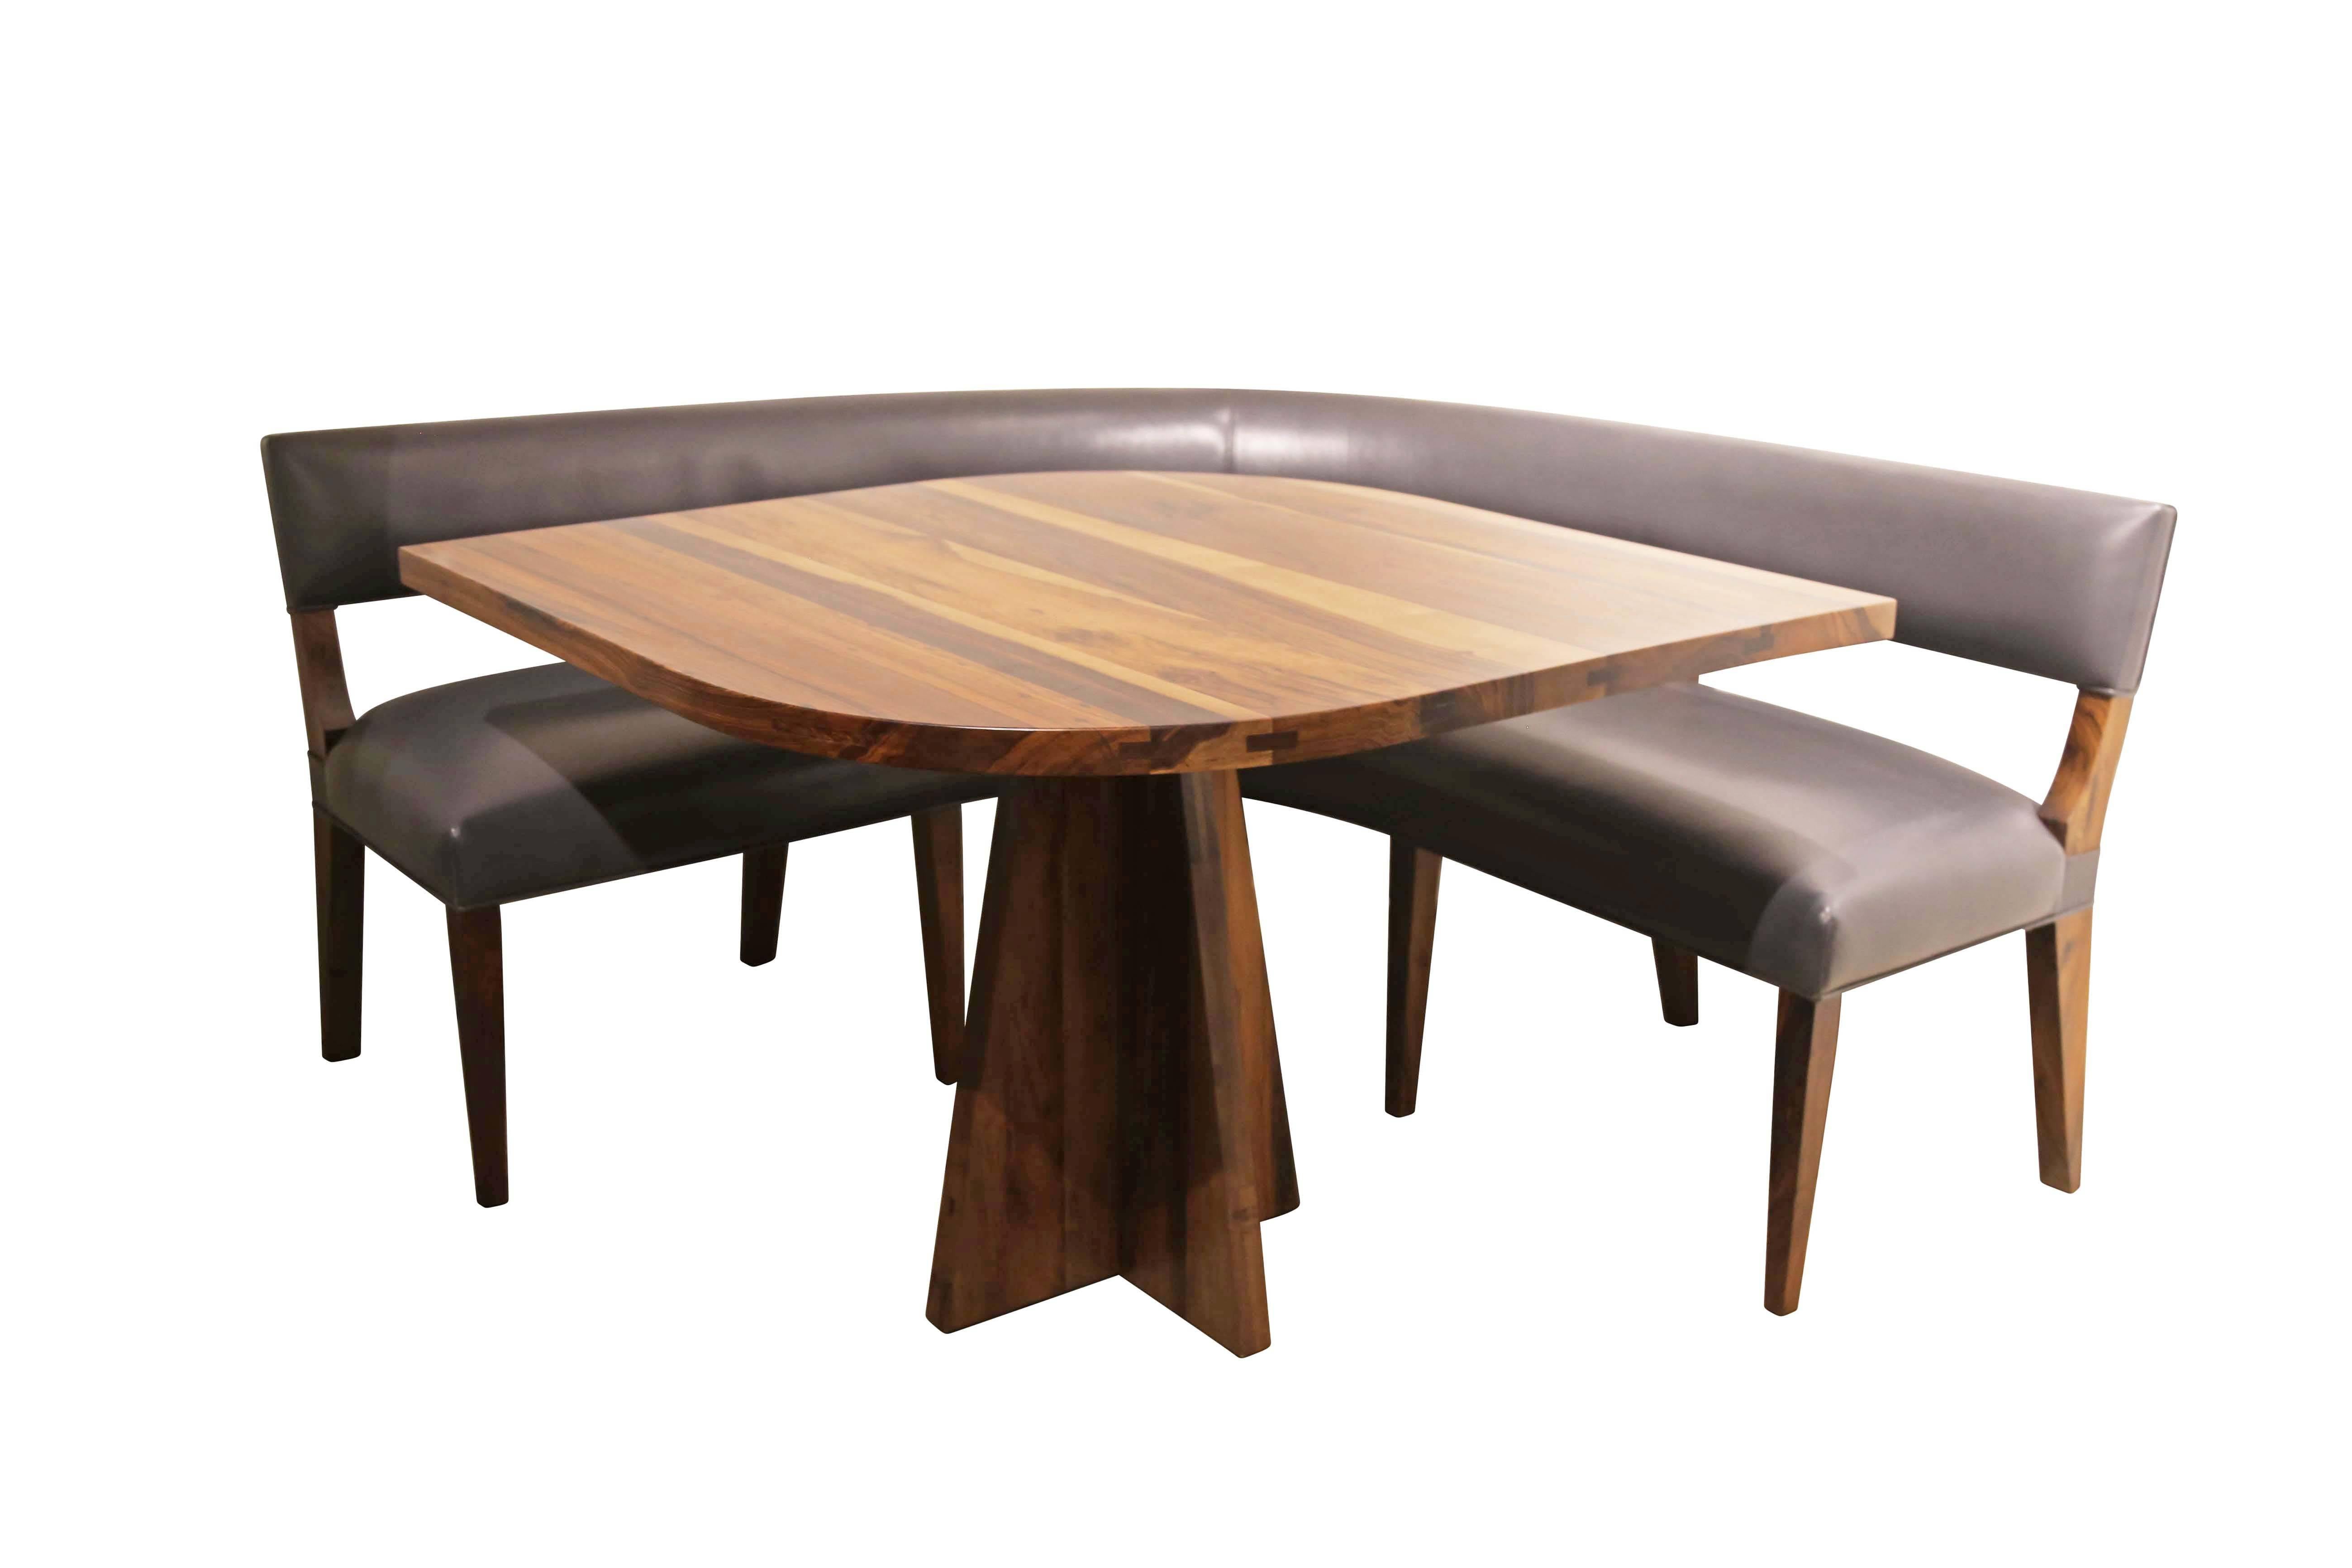 La table Luca est l'une des pièces les plus emblématiques et les plus demandées de Costantini. Ce dessus en forme de goutte d'eau en fait le pendant parfait d'un stand comme notre modèle Bruno présenté ci-dessus. 

Présenté en palissandre